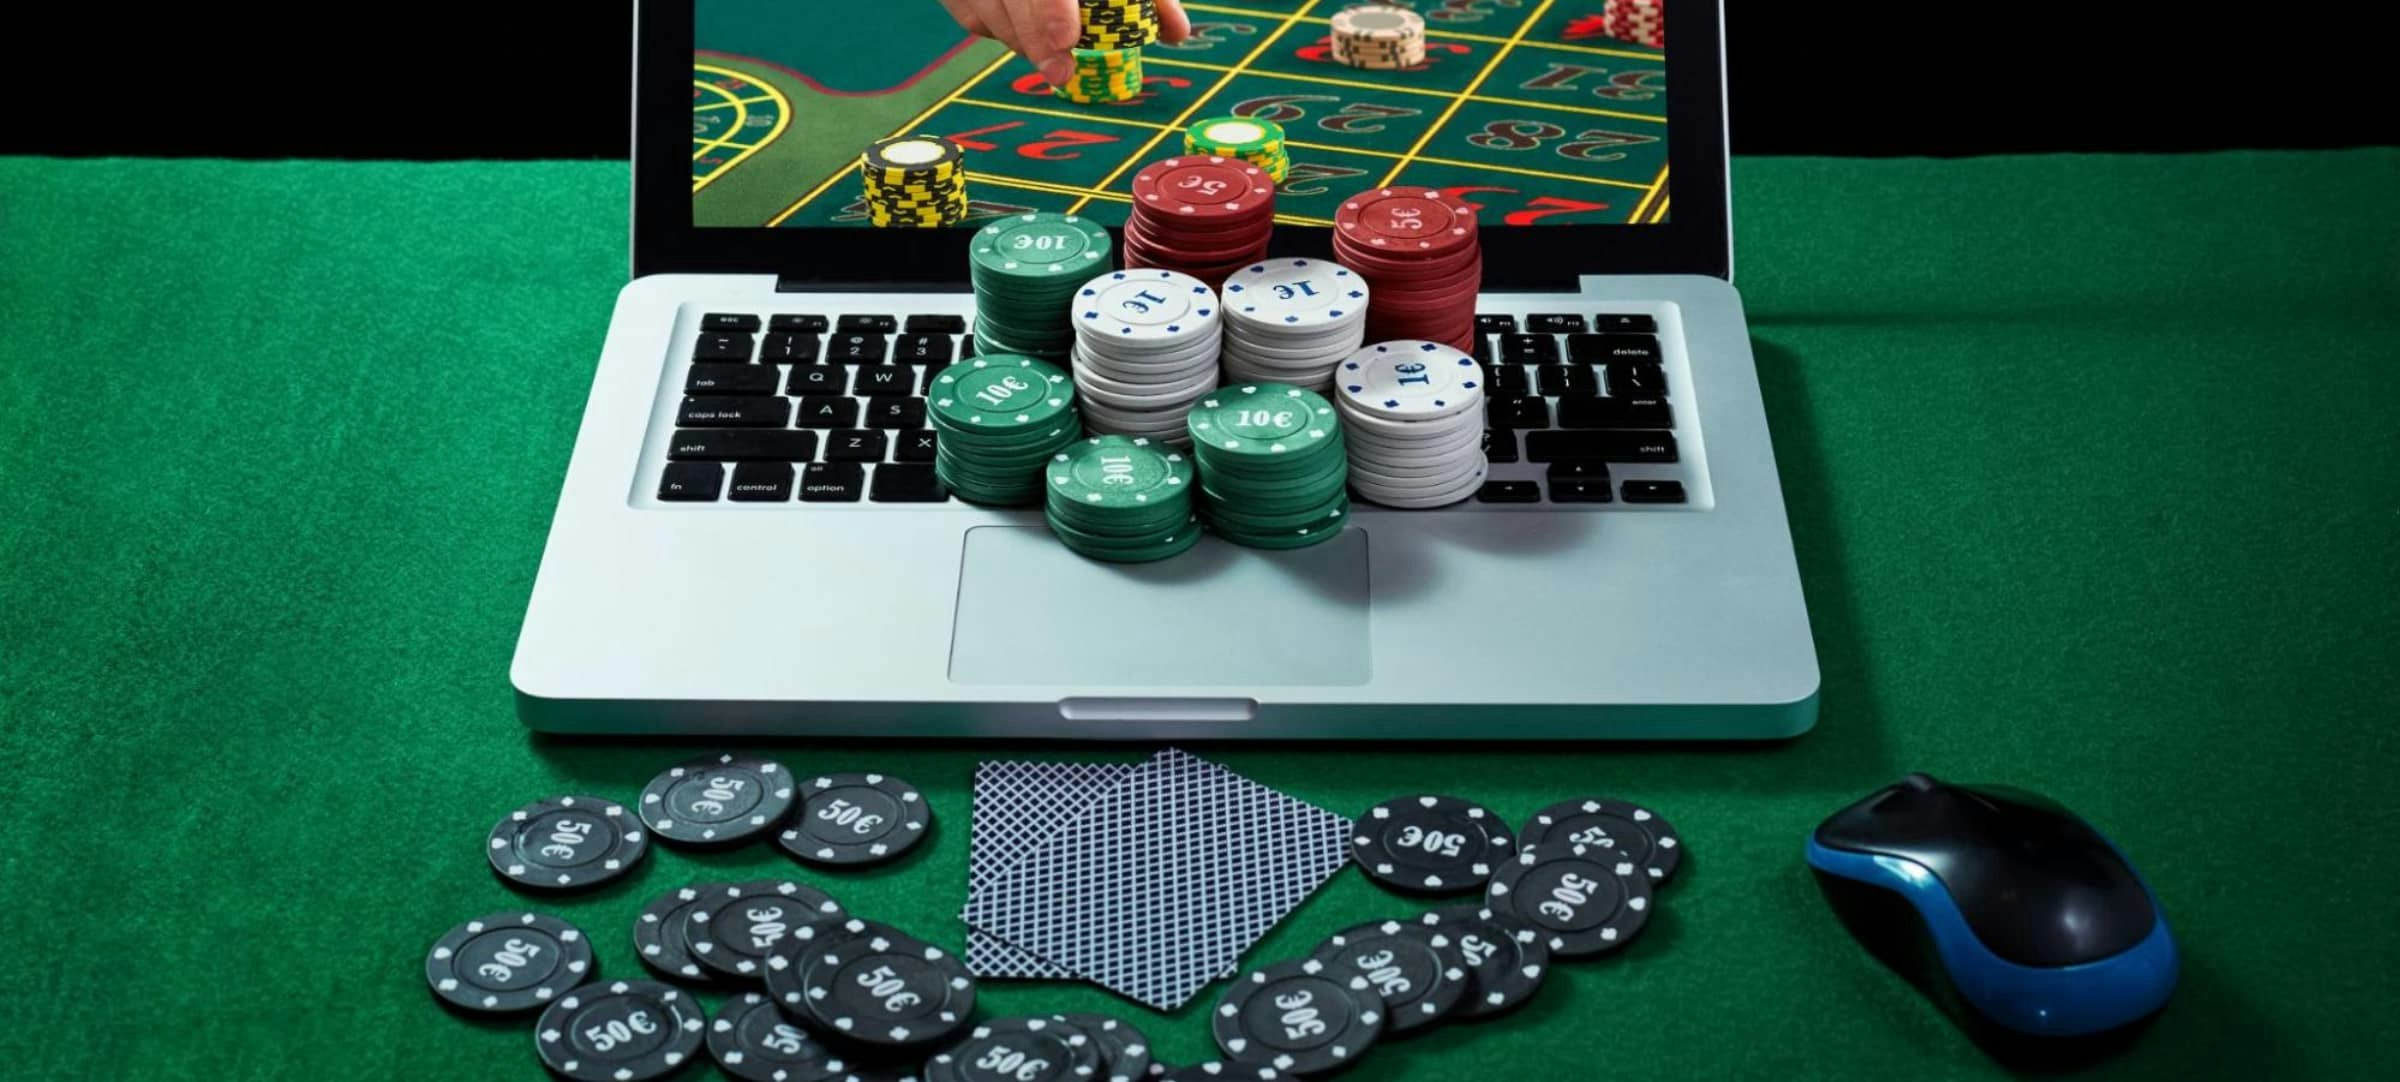 Ventajas de un casino Bitcoin frente a los casinos tradicionales